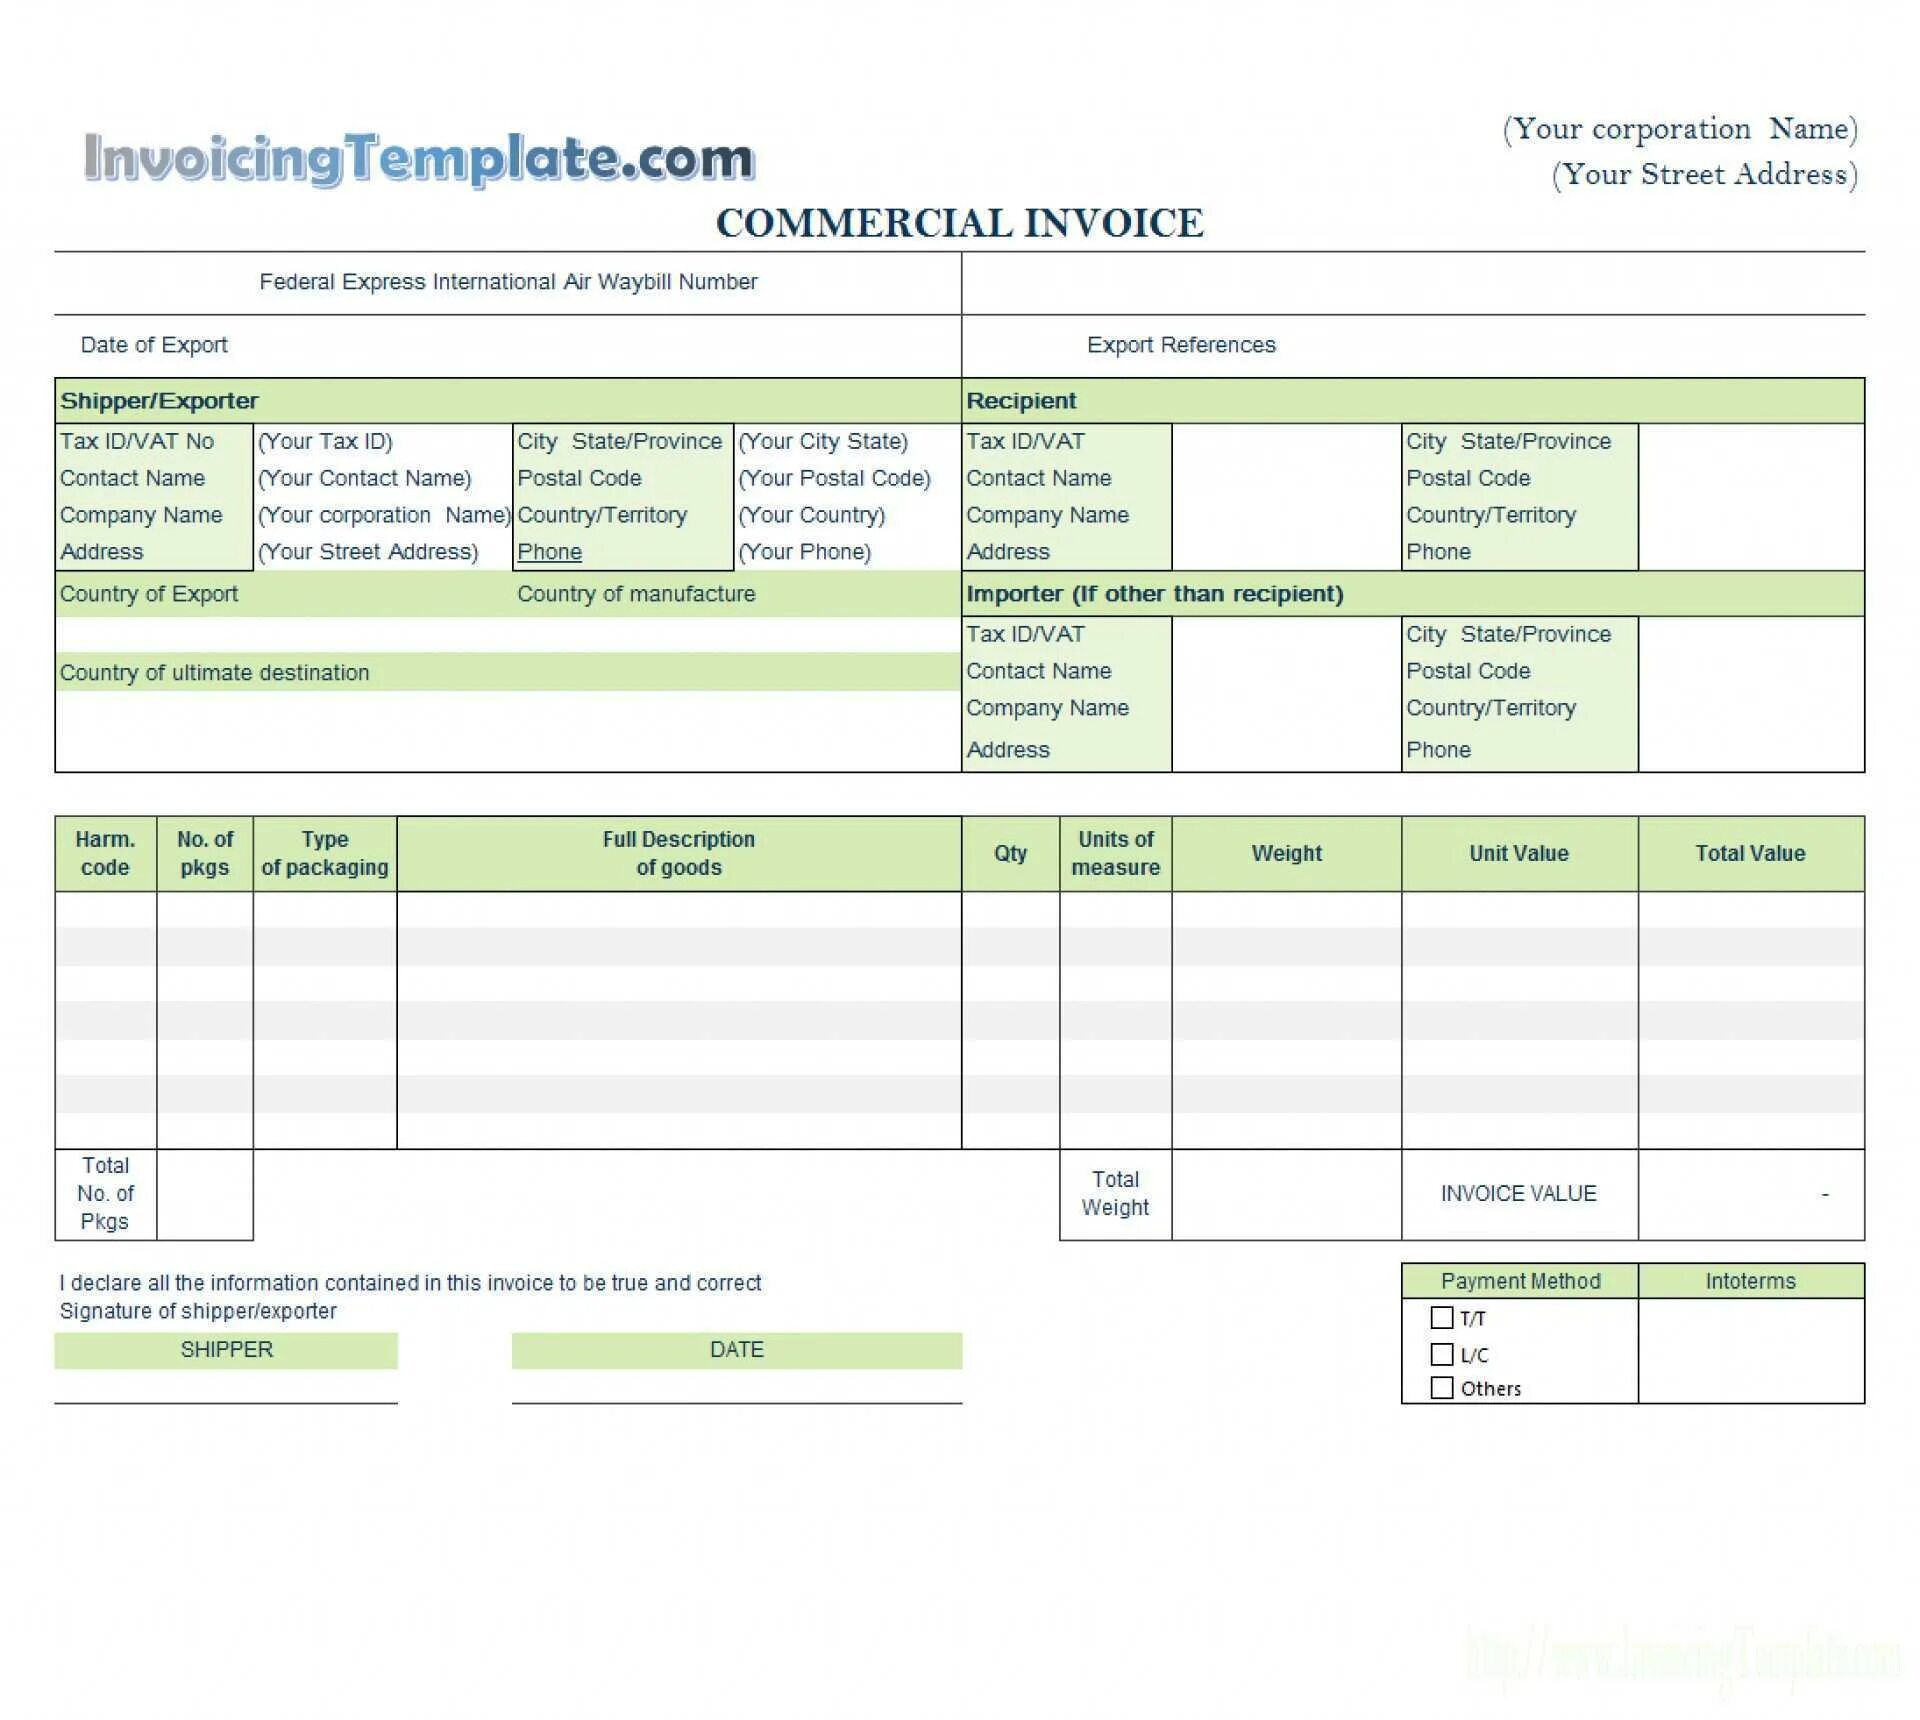 Коммерческий инвойс. Commercial Invoice Template. Payment method в инвойсе. Commercial Invoice Sample. Recipient city